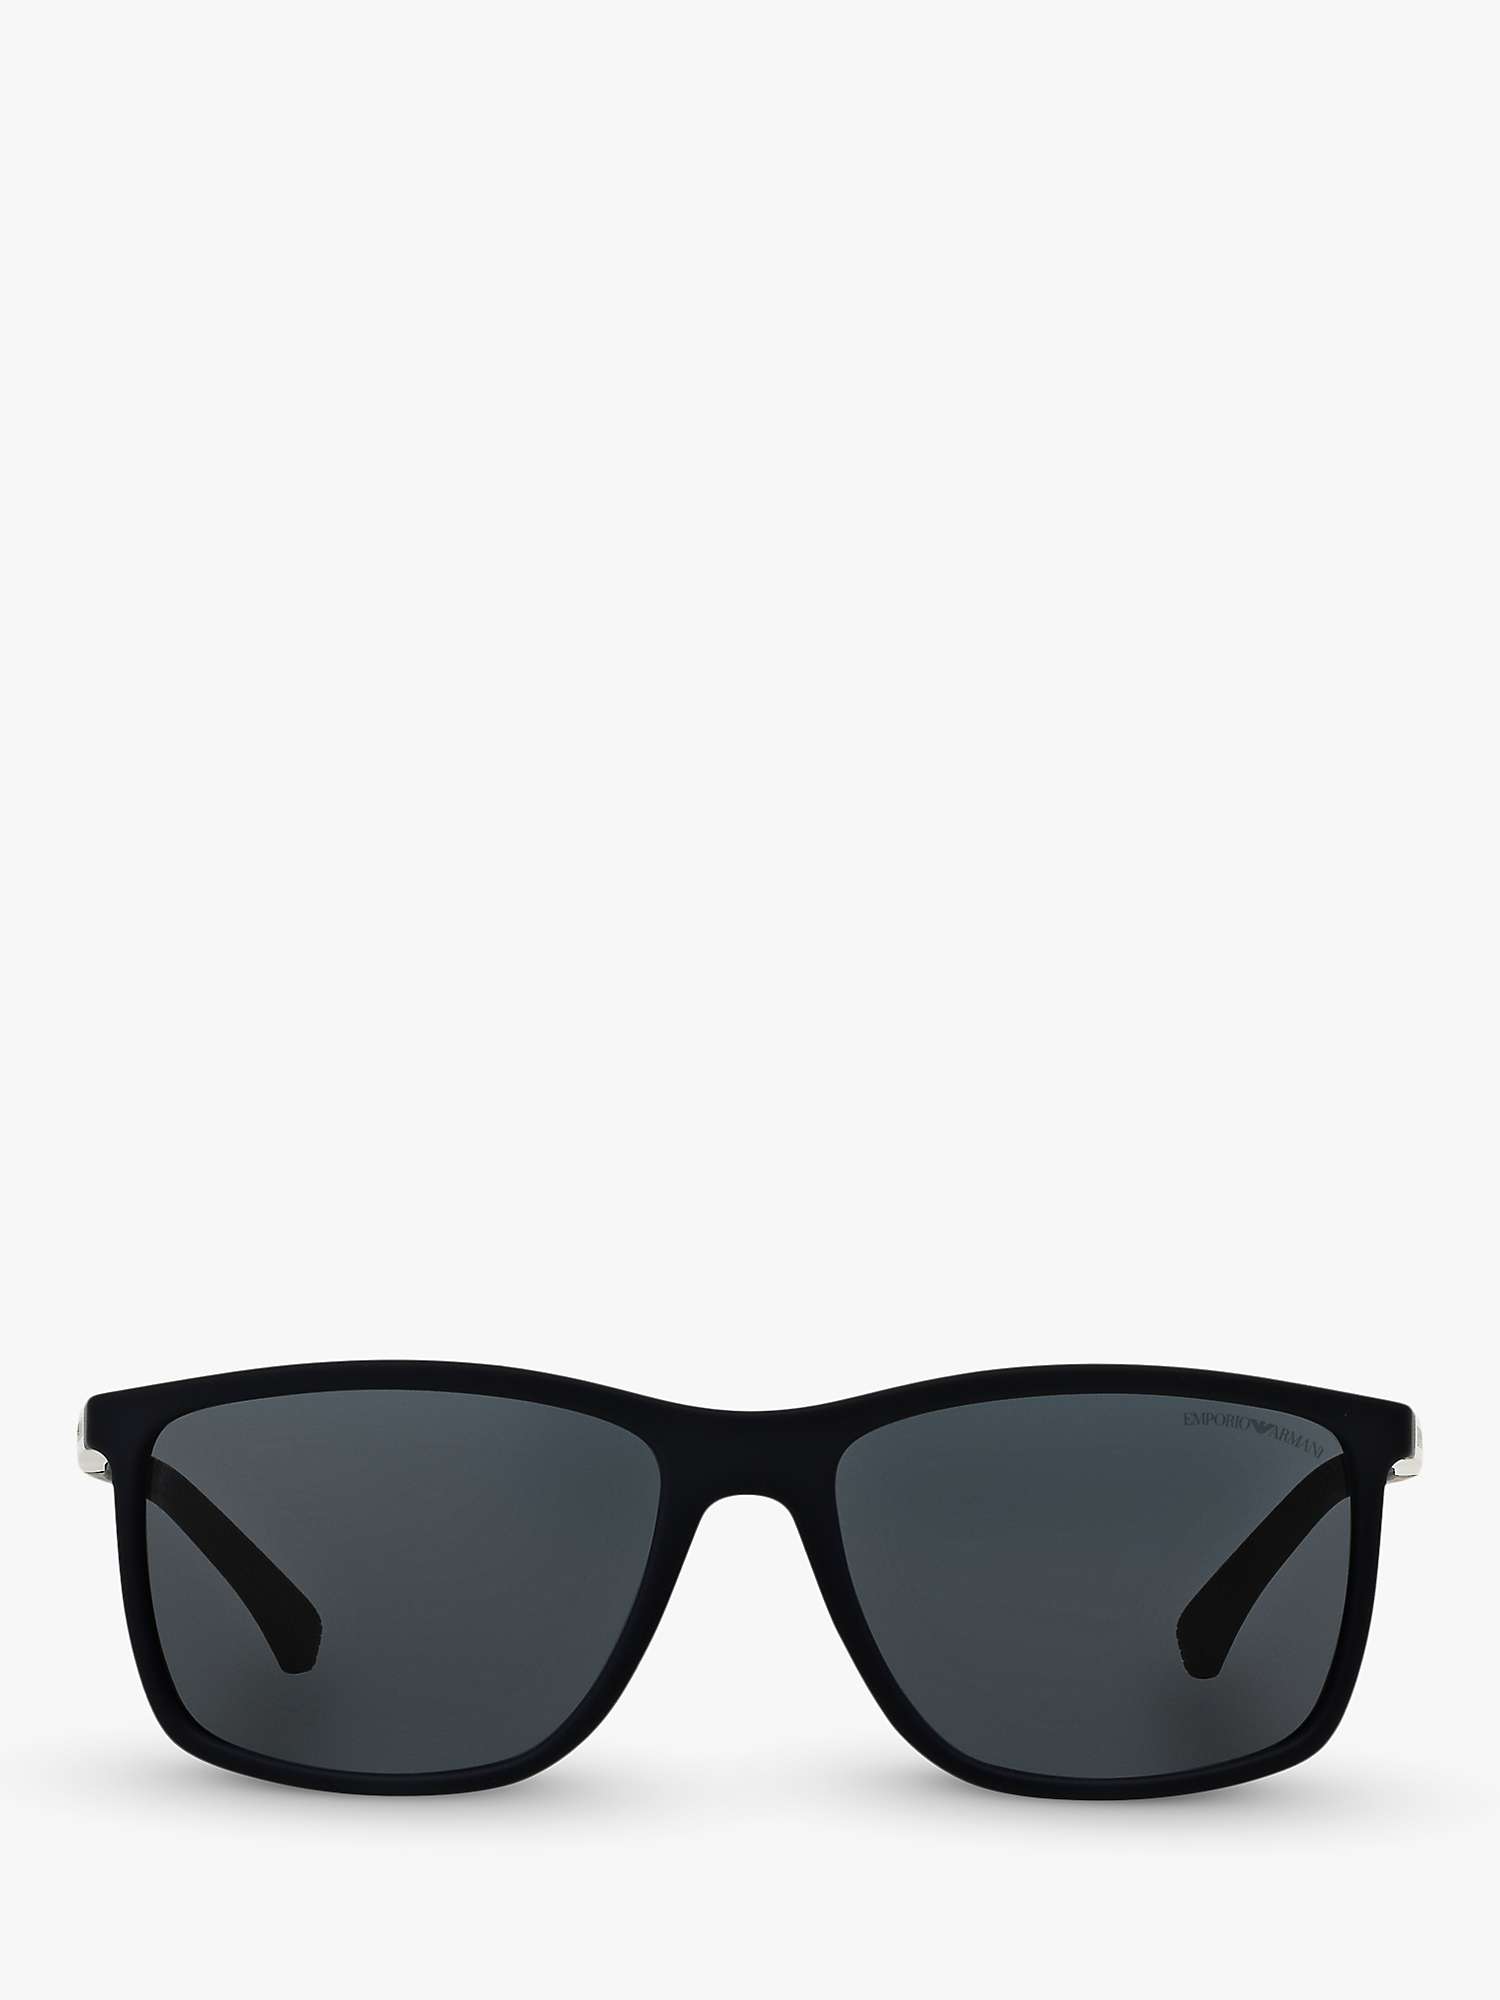 Emporio Armani EA4058 Men's Rectangular Sunglasses, Midnight/Black at ...